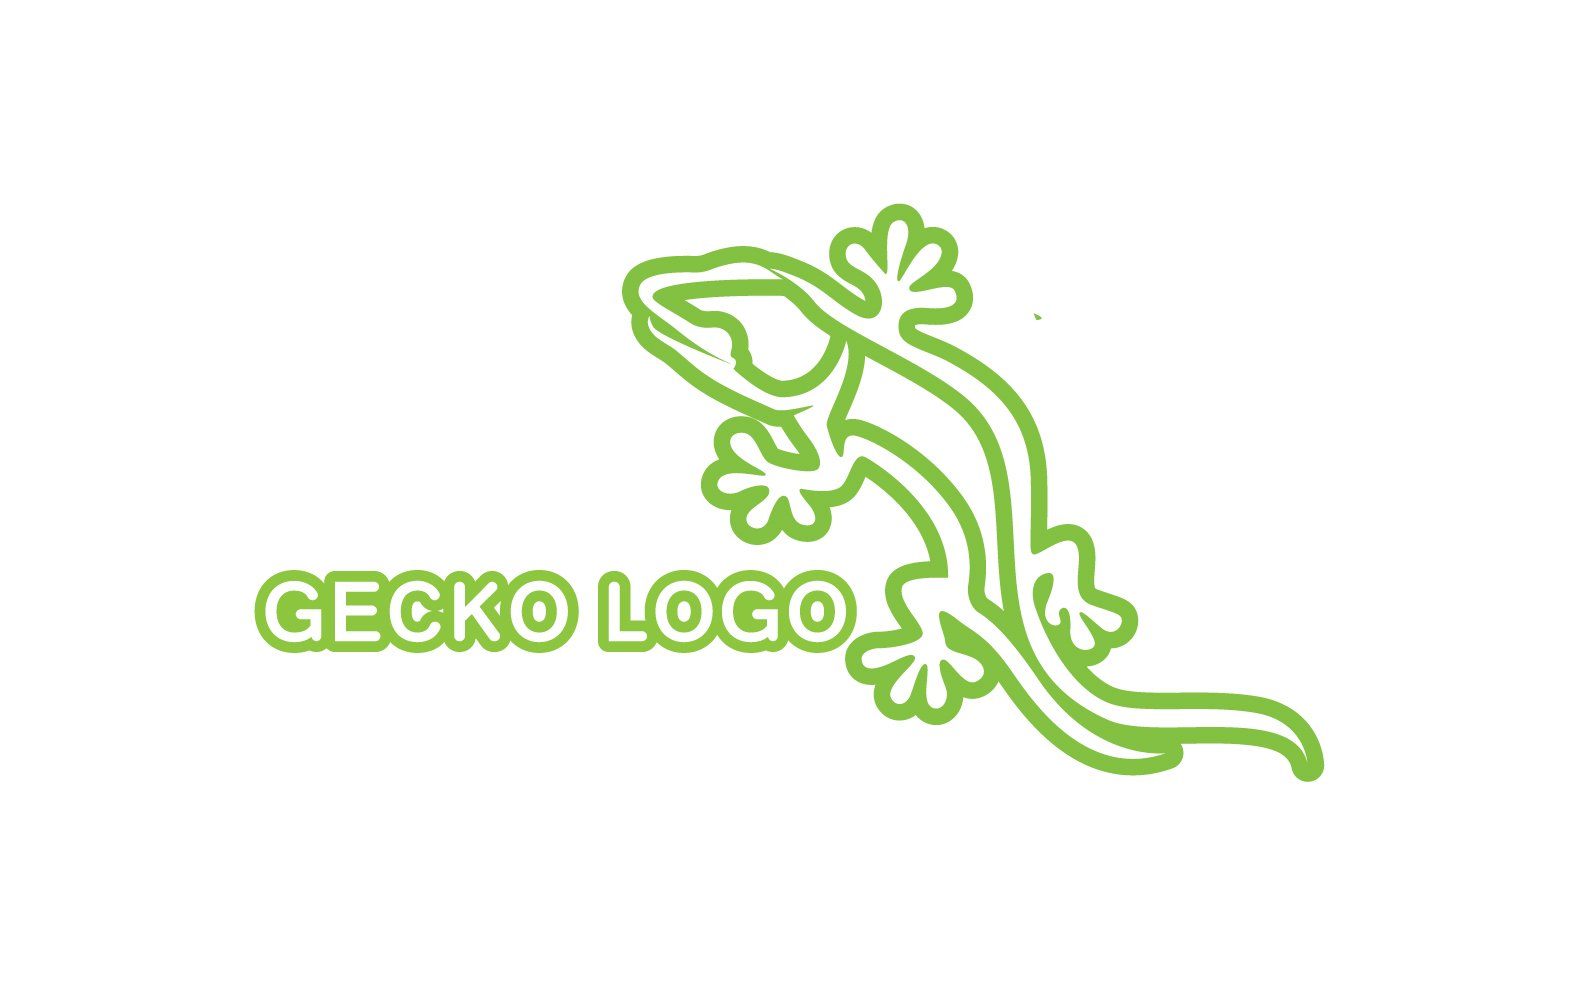 Kit Graphique #324518 Logo Gecko Divers Modles Web - Logo template Preview